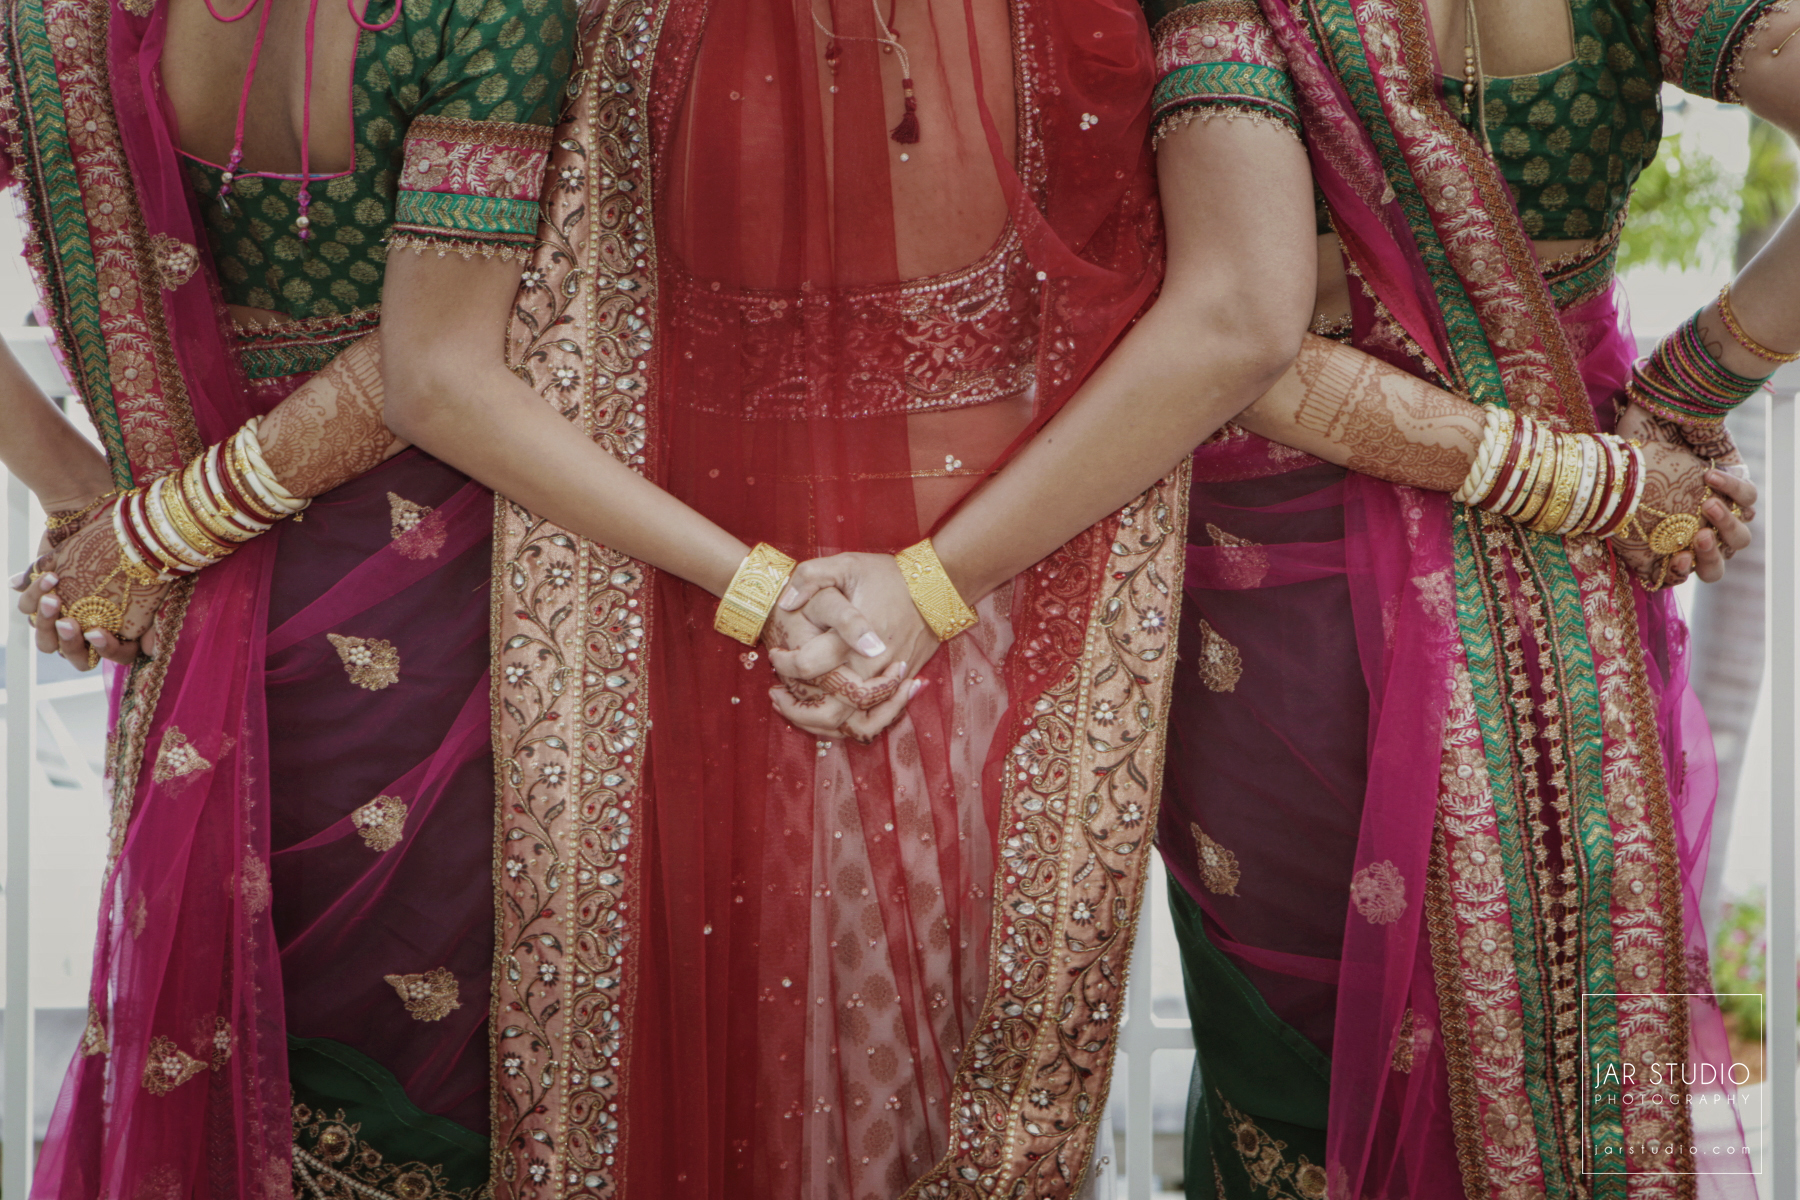 17-indian-bride-bridesmaids-colorful-sarees-jarstudio-photography.JPG